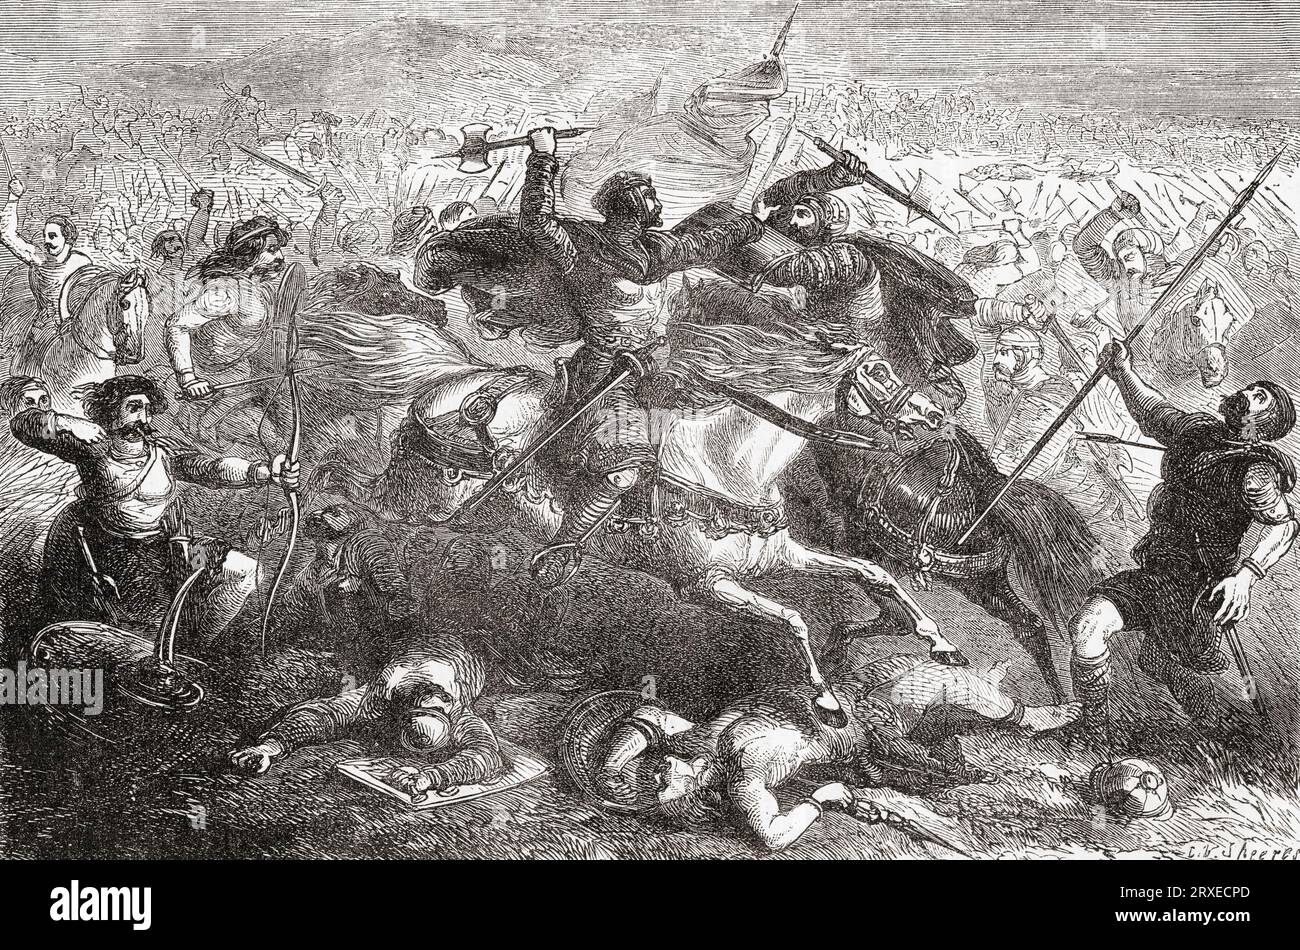 Der legendäre König Arthur besiegte die Sachsen in der Schlacht von Badon, auch bekannt als Schlacht von Mons Badonicus. Aus Cassell's Illustrated History of England, veröffentlicht 1857. Stockfoto